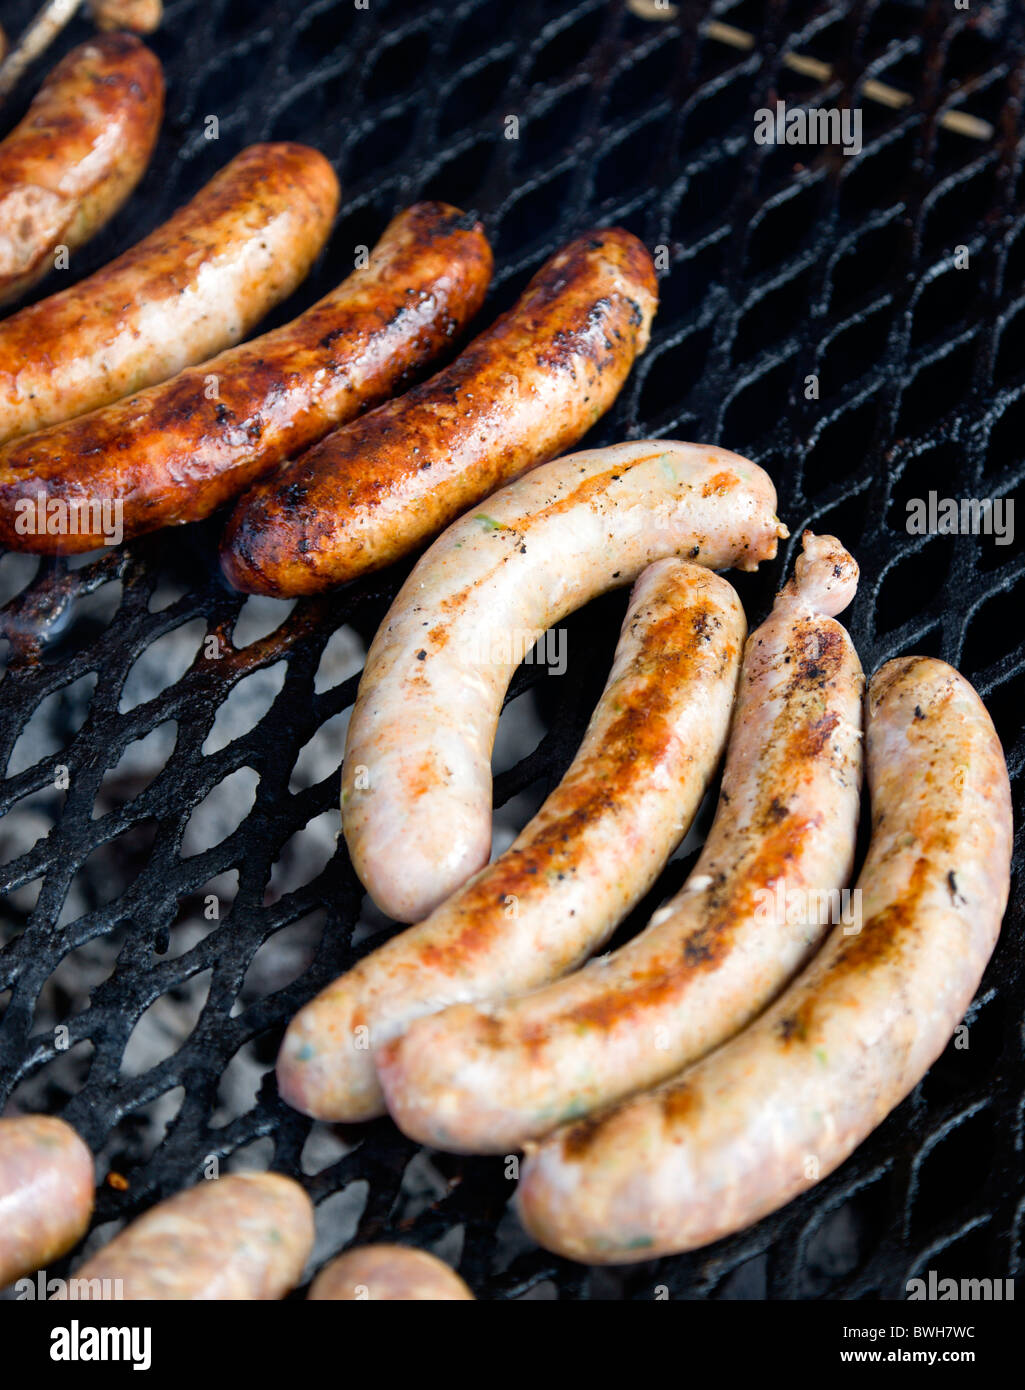 La cuisson des aliments, viande, saucisses, être cuit sur un BBQ Barbecue grill extérieur sur des charbons ardents. Banque D'Images